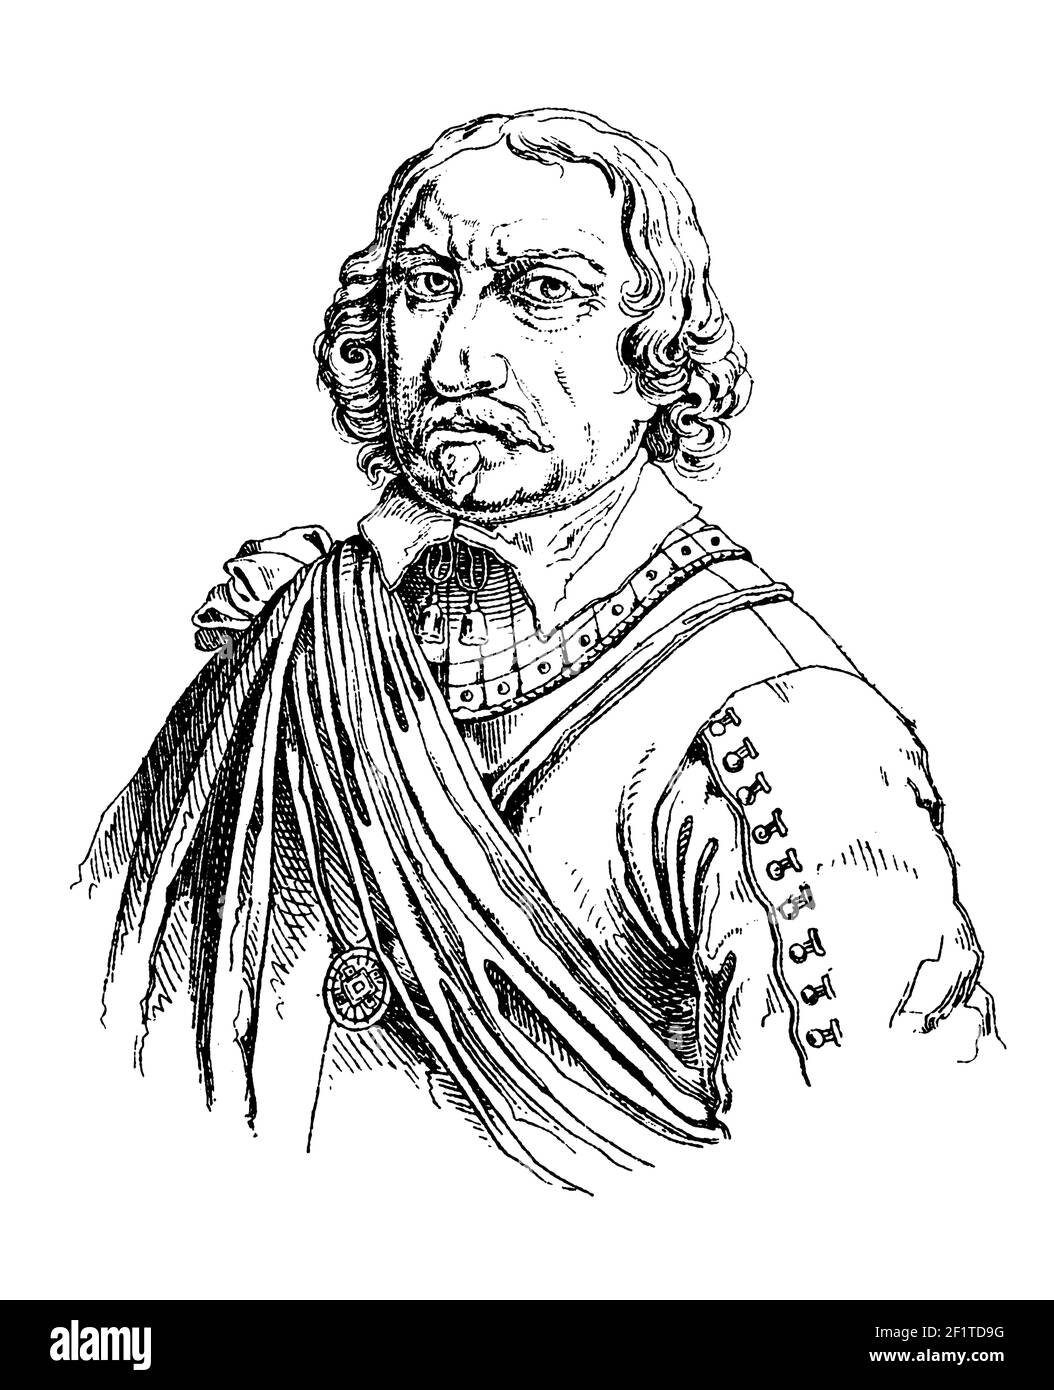 Ilustración antigua de un retrato de Oliver Cromwell, líder militar y político inglés. Cromwell nació el 25 de abril de 1599 [os] en Huntington, Foto de stock